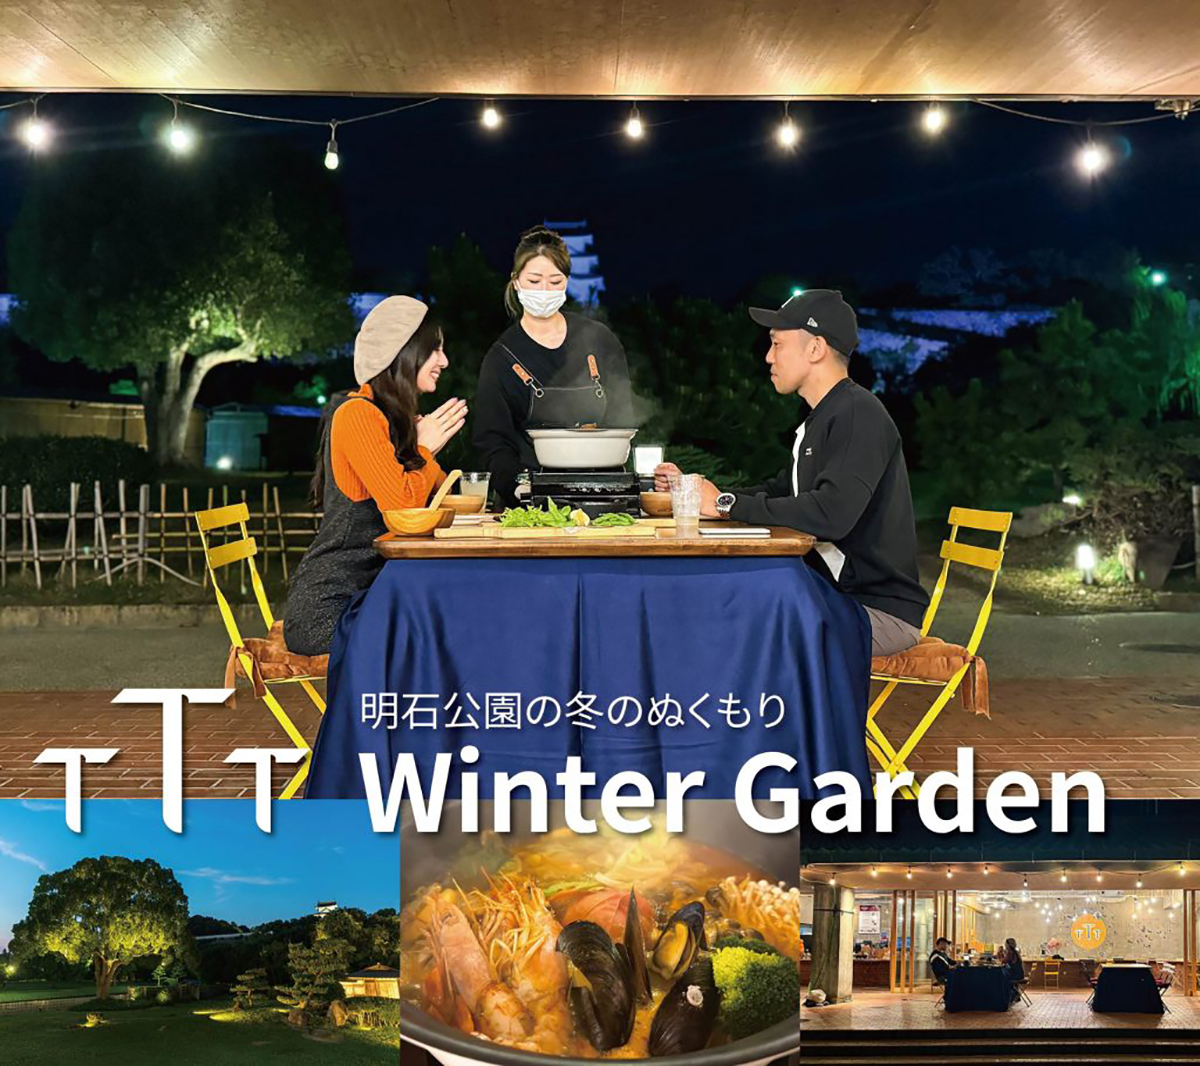 明石公園内のカフェ＆バー『TTT』で冬の特別なビアガーデン開催中　明石市 [画像]